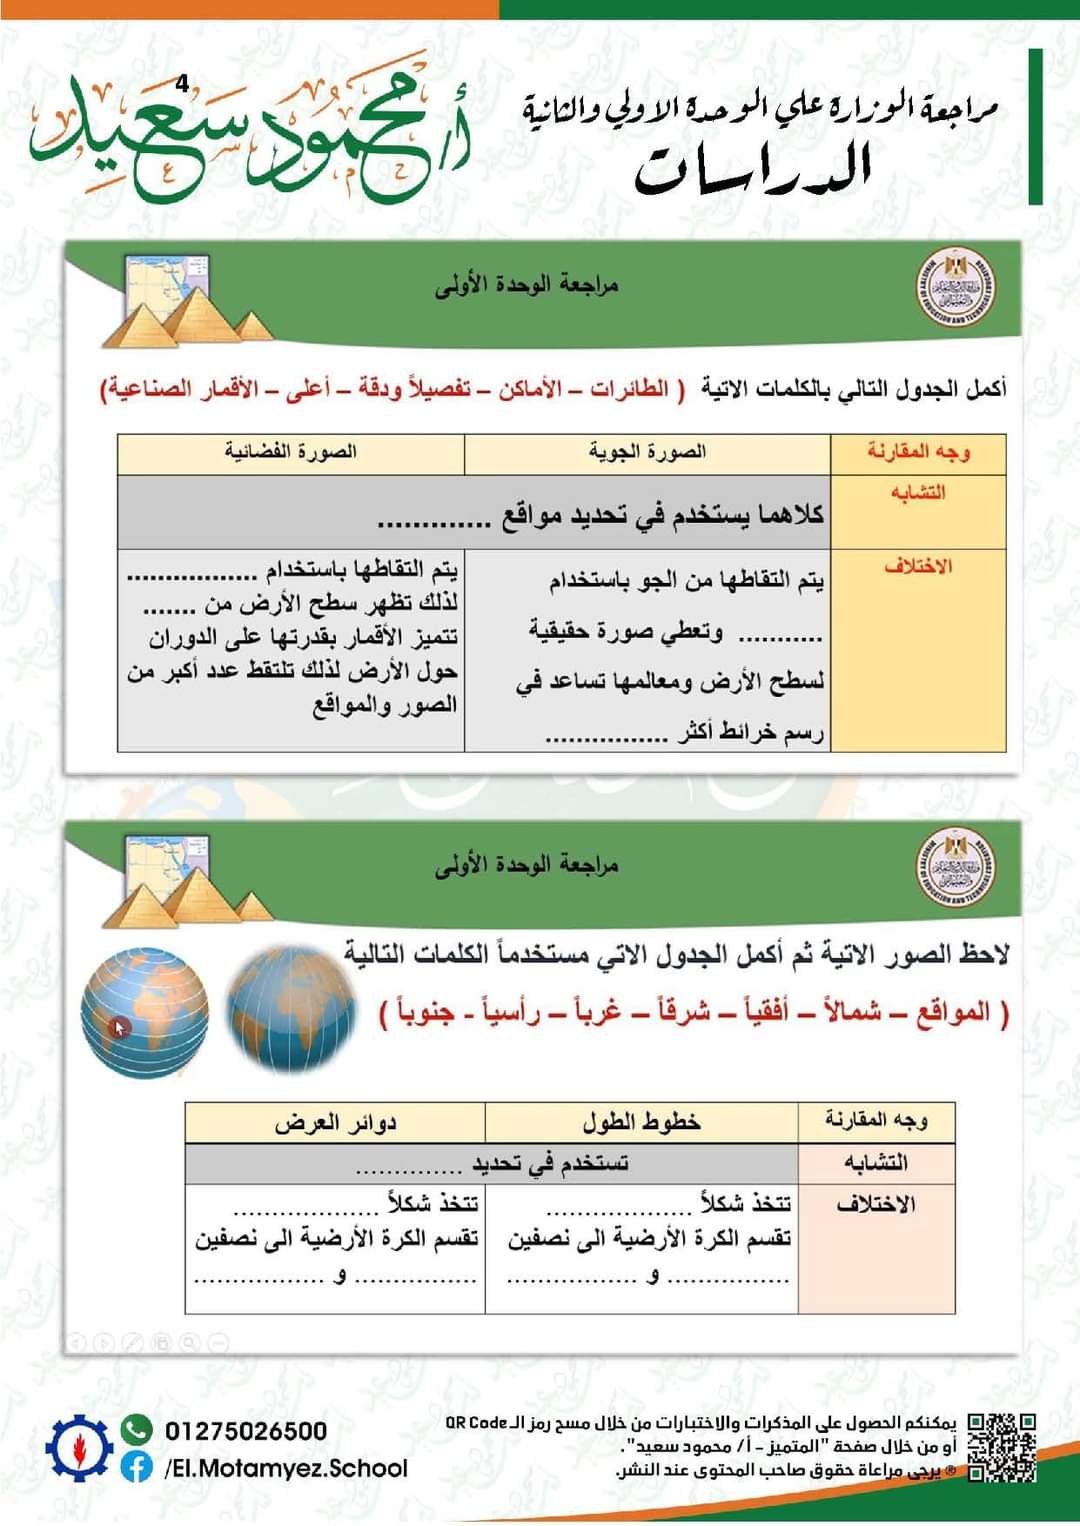 مراجعة الوزارة دراسات رابعة ابتدائي - تحميل نماذج الوزارة رابعة